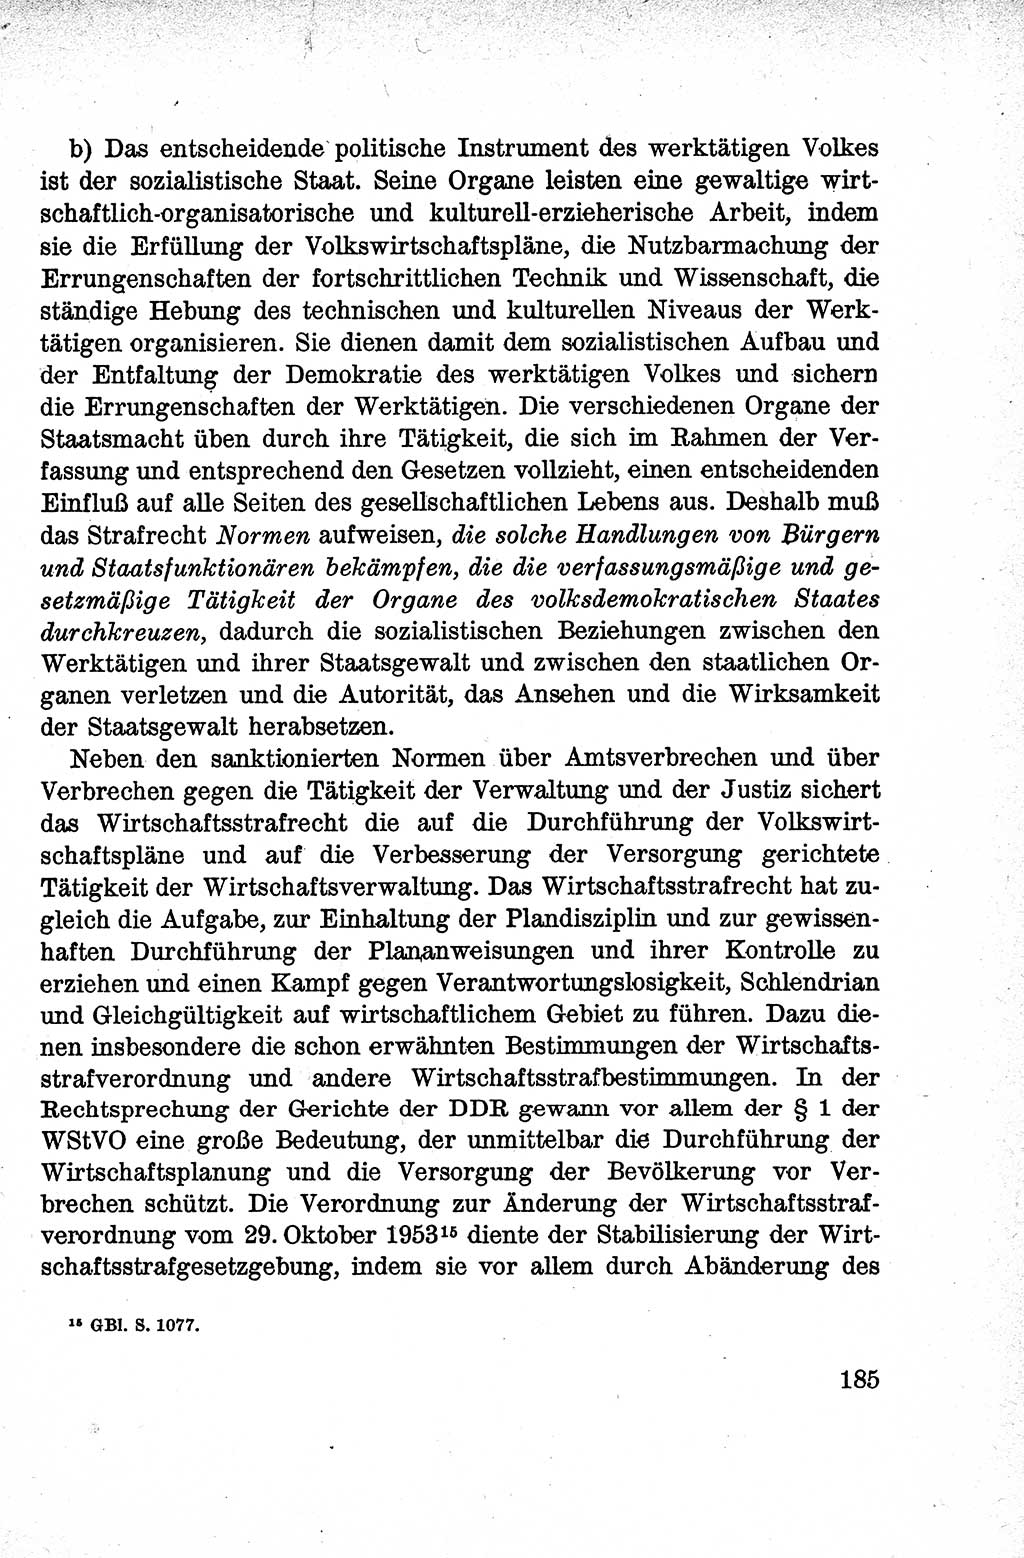 Lehrbuch des Strafrechts der Deutschen Demokratischen Republik (DDR), Allgemeiner Teil 1959, Seite 185 (Lb. Strafr. DDR AT 1959, S. 185)